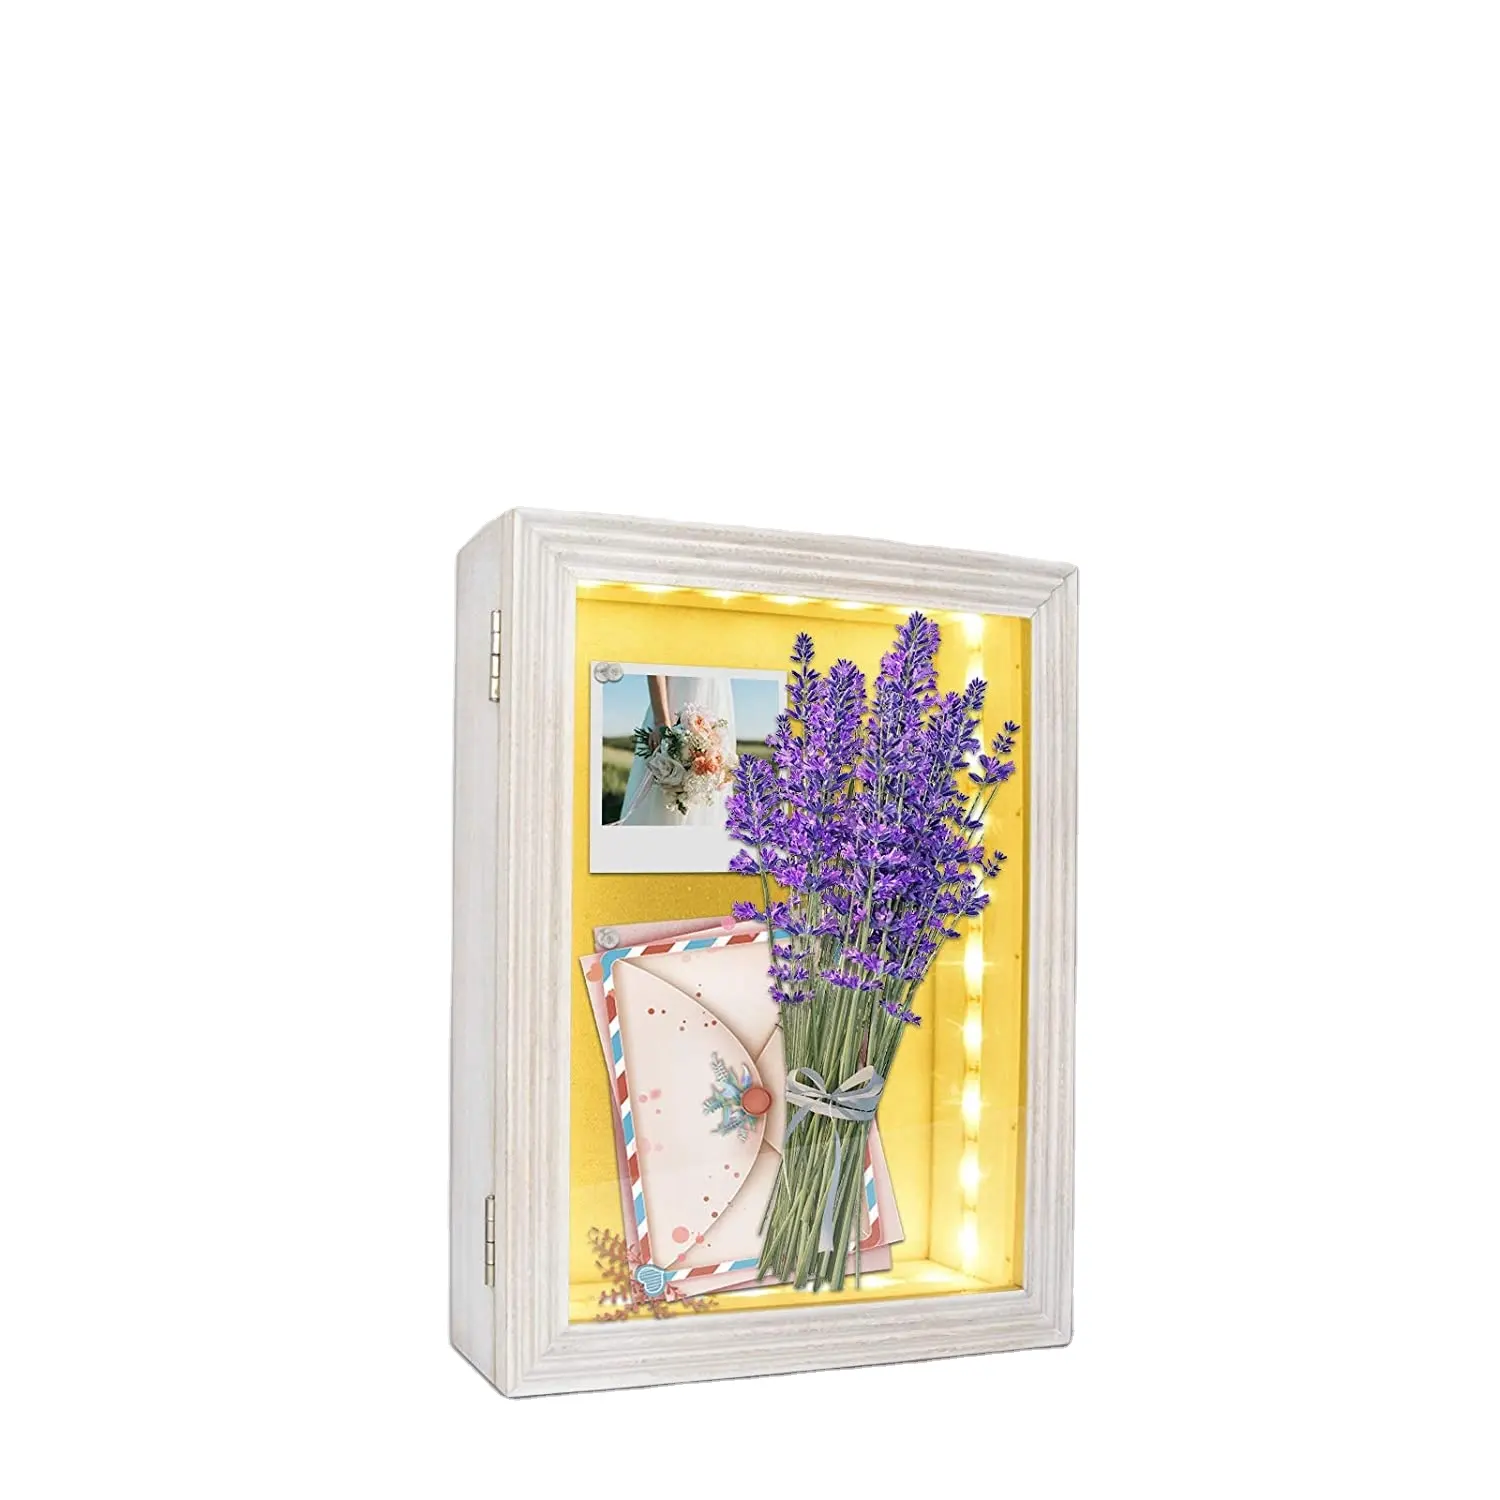 Bingkai Kotak Bayangan Cahaya Besar Magnet Memori Dekoratif Beli Banyak Foto Kayu Putih LED Gaya Pedesaan 8X10 Bingkai Bunga